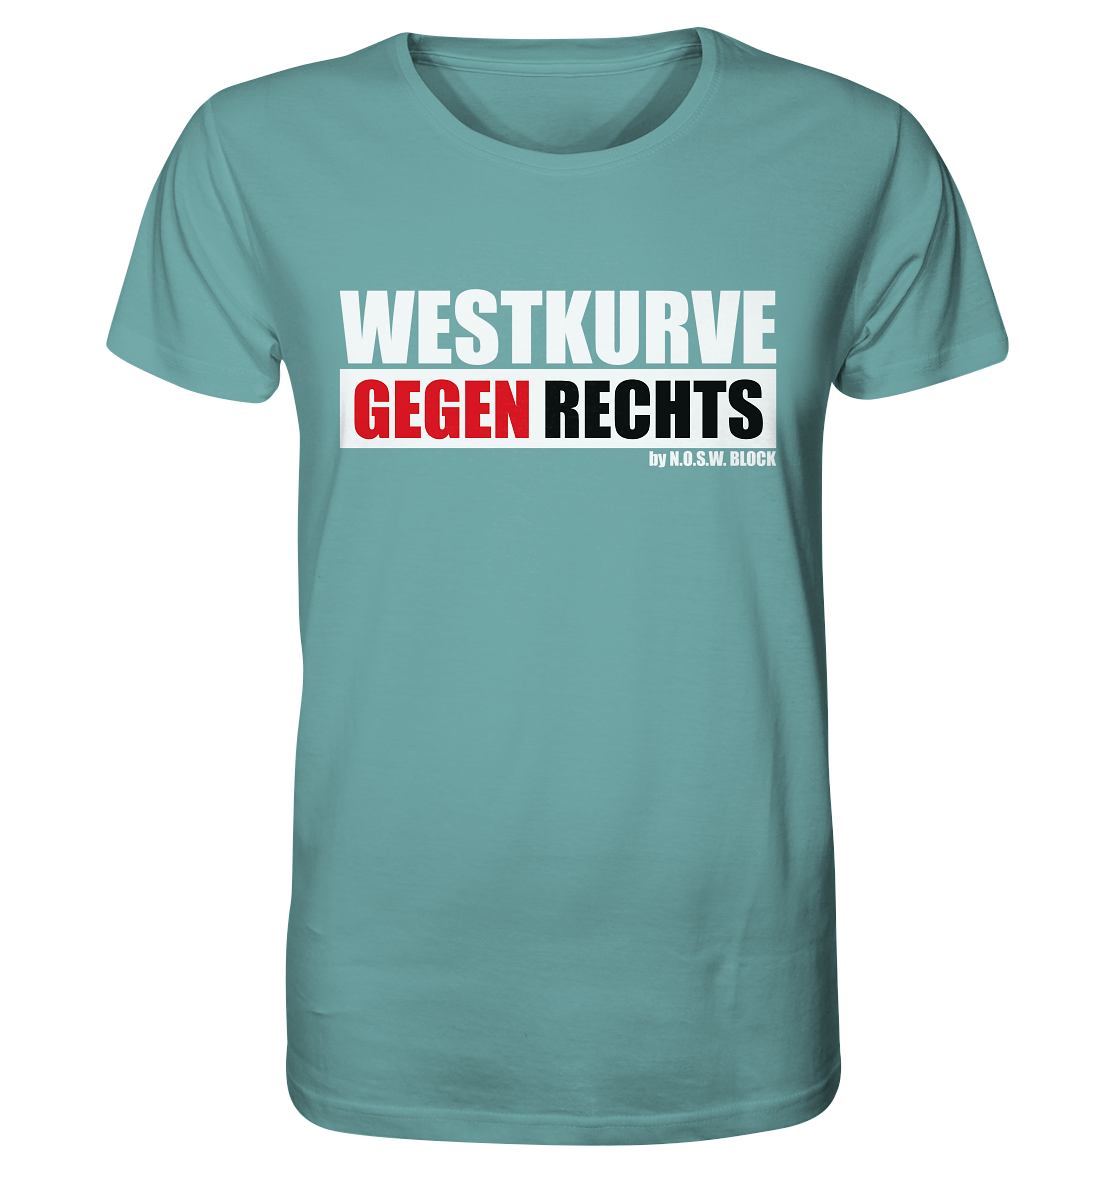 N.O.S.W. BLOCK Gegen Rechts Shirt "WESTKURVE GEGEN RECHTS" Männer Organic T-Shirt citadel blue